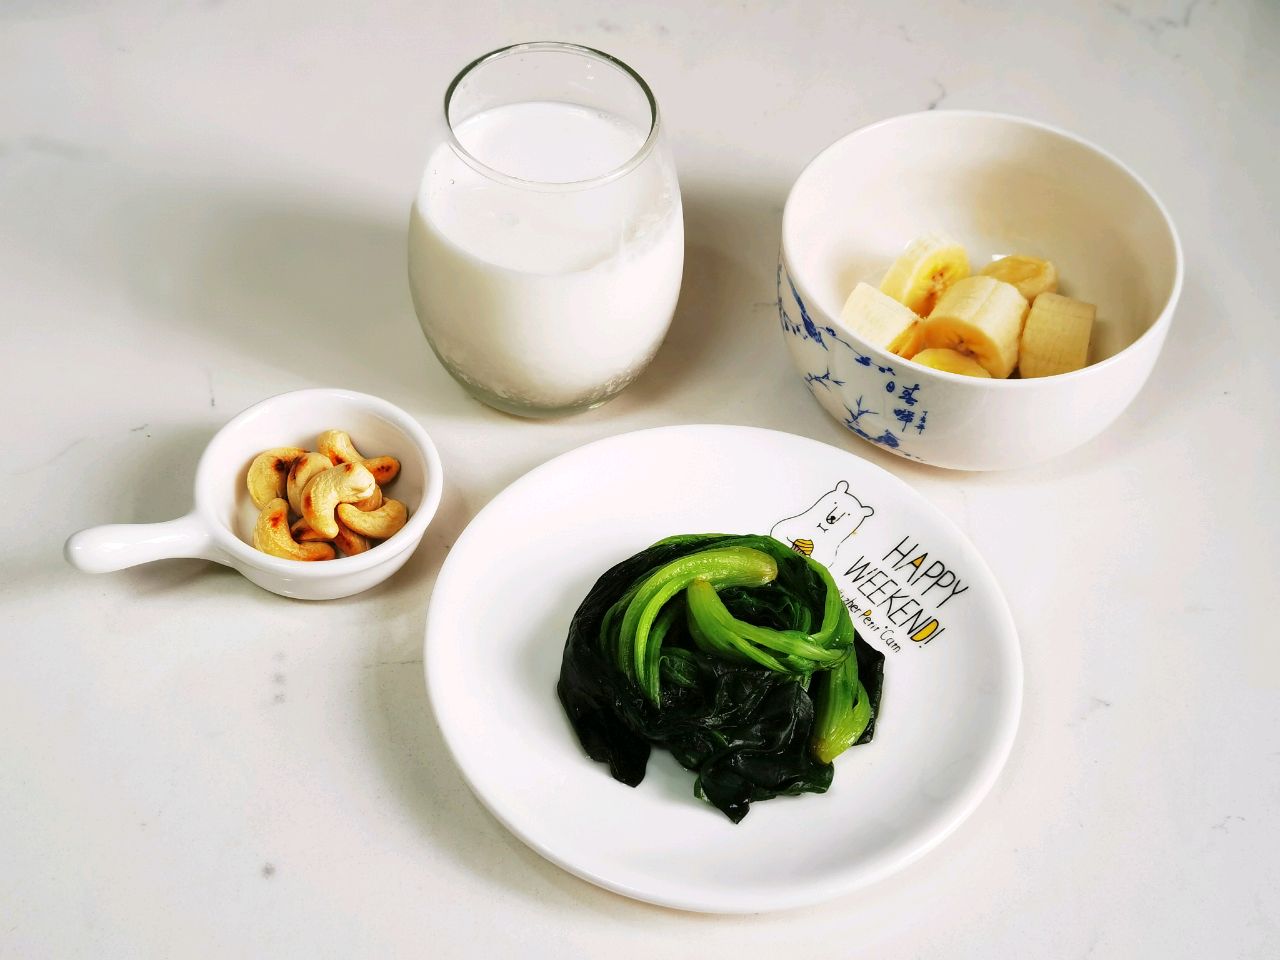 Sữa dinh dưỡng rau quả thức uống lý tưởng để giảm cân - Ảnh 2.